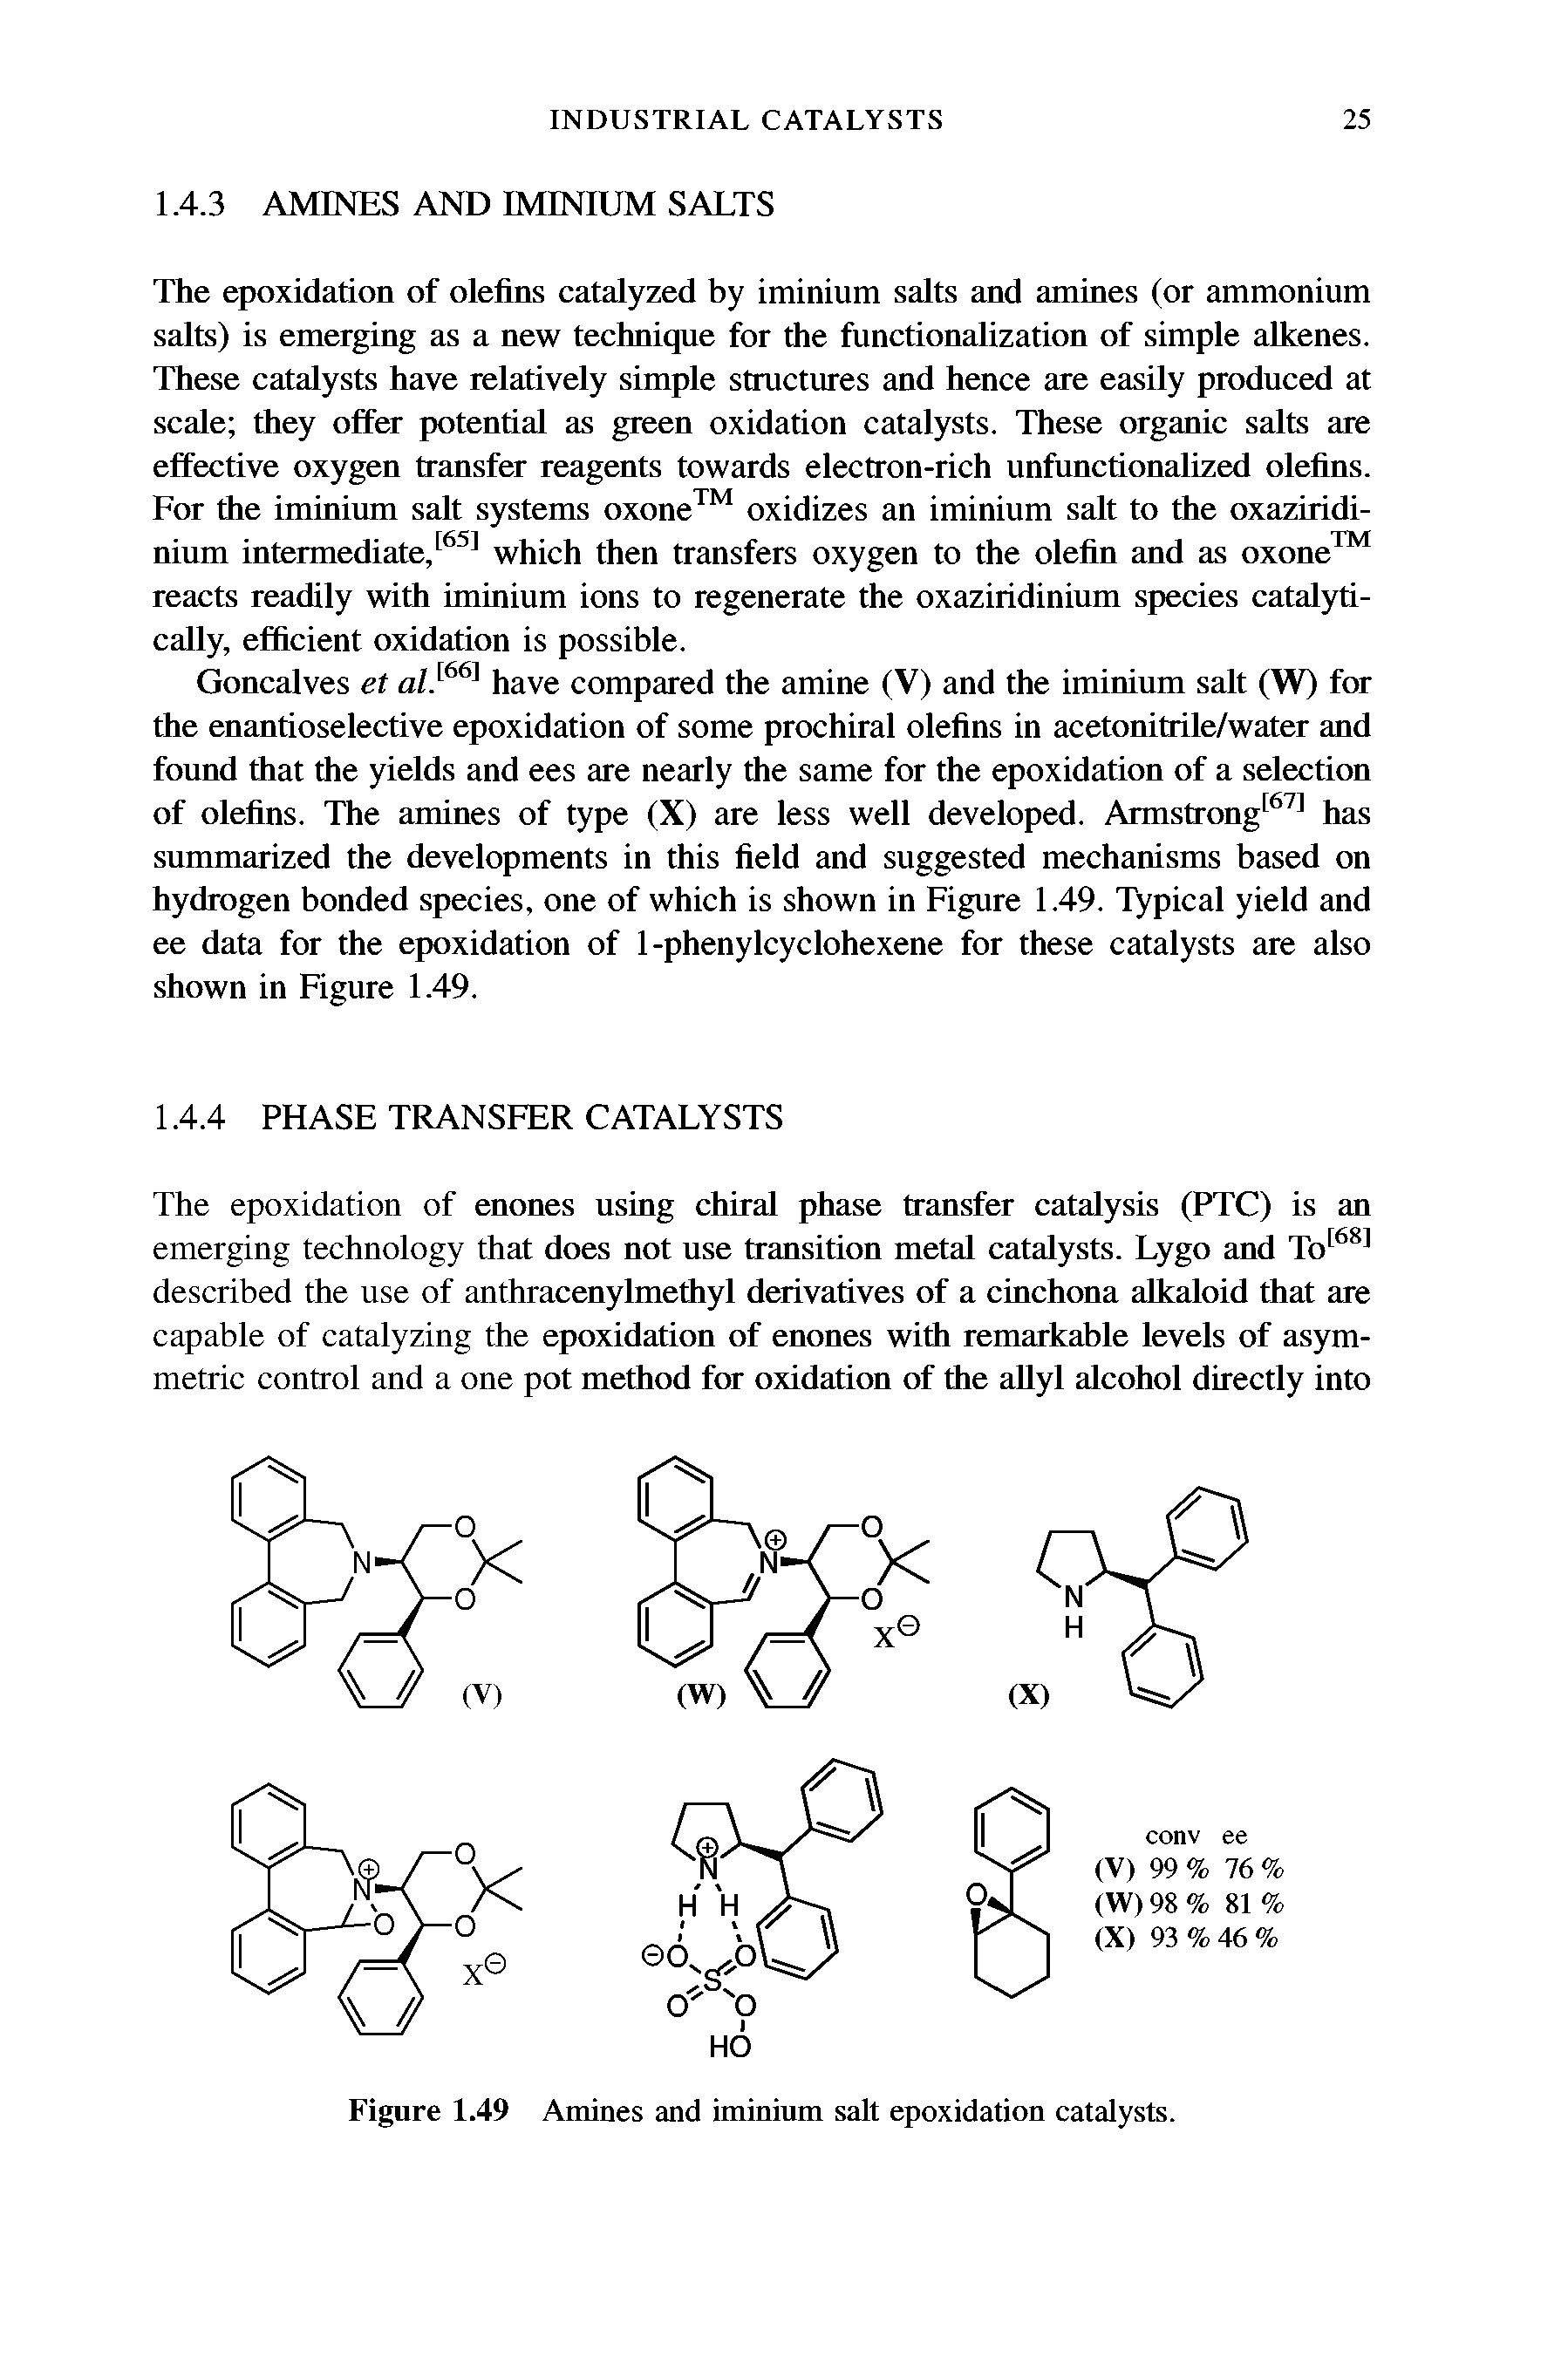 Figure 1.49 Amines and iminium salt epoxidation catalysts.